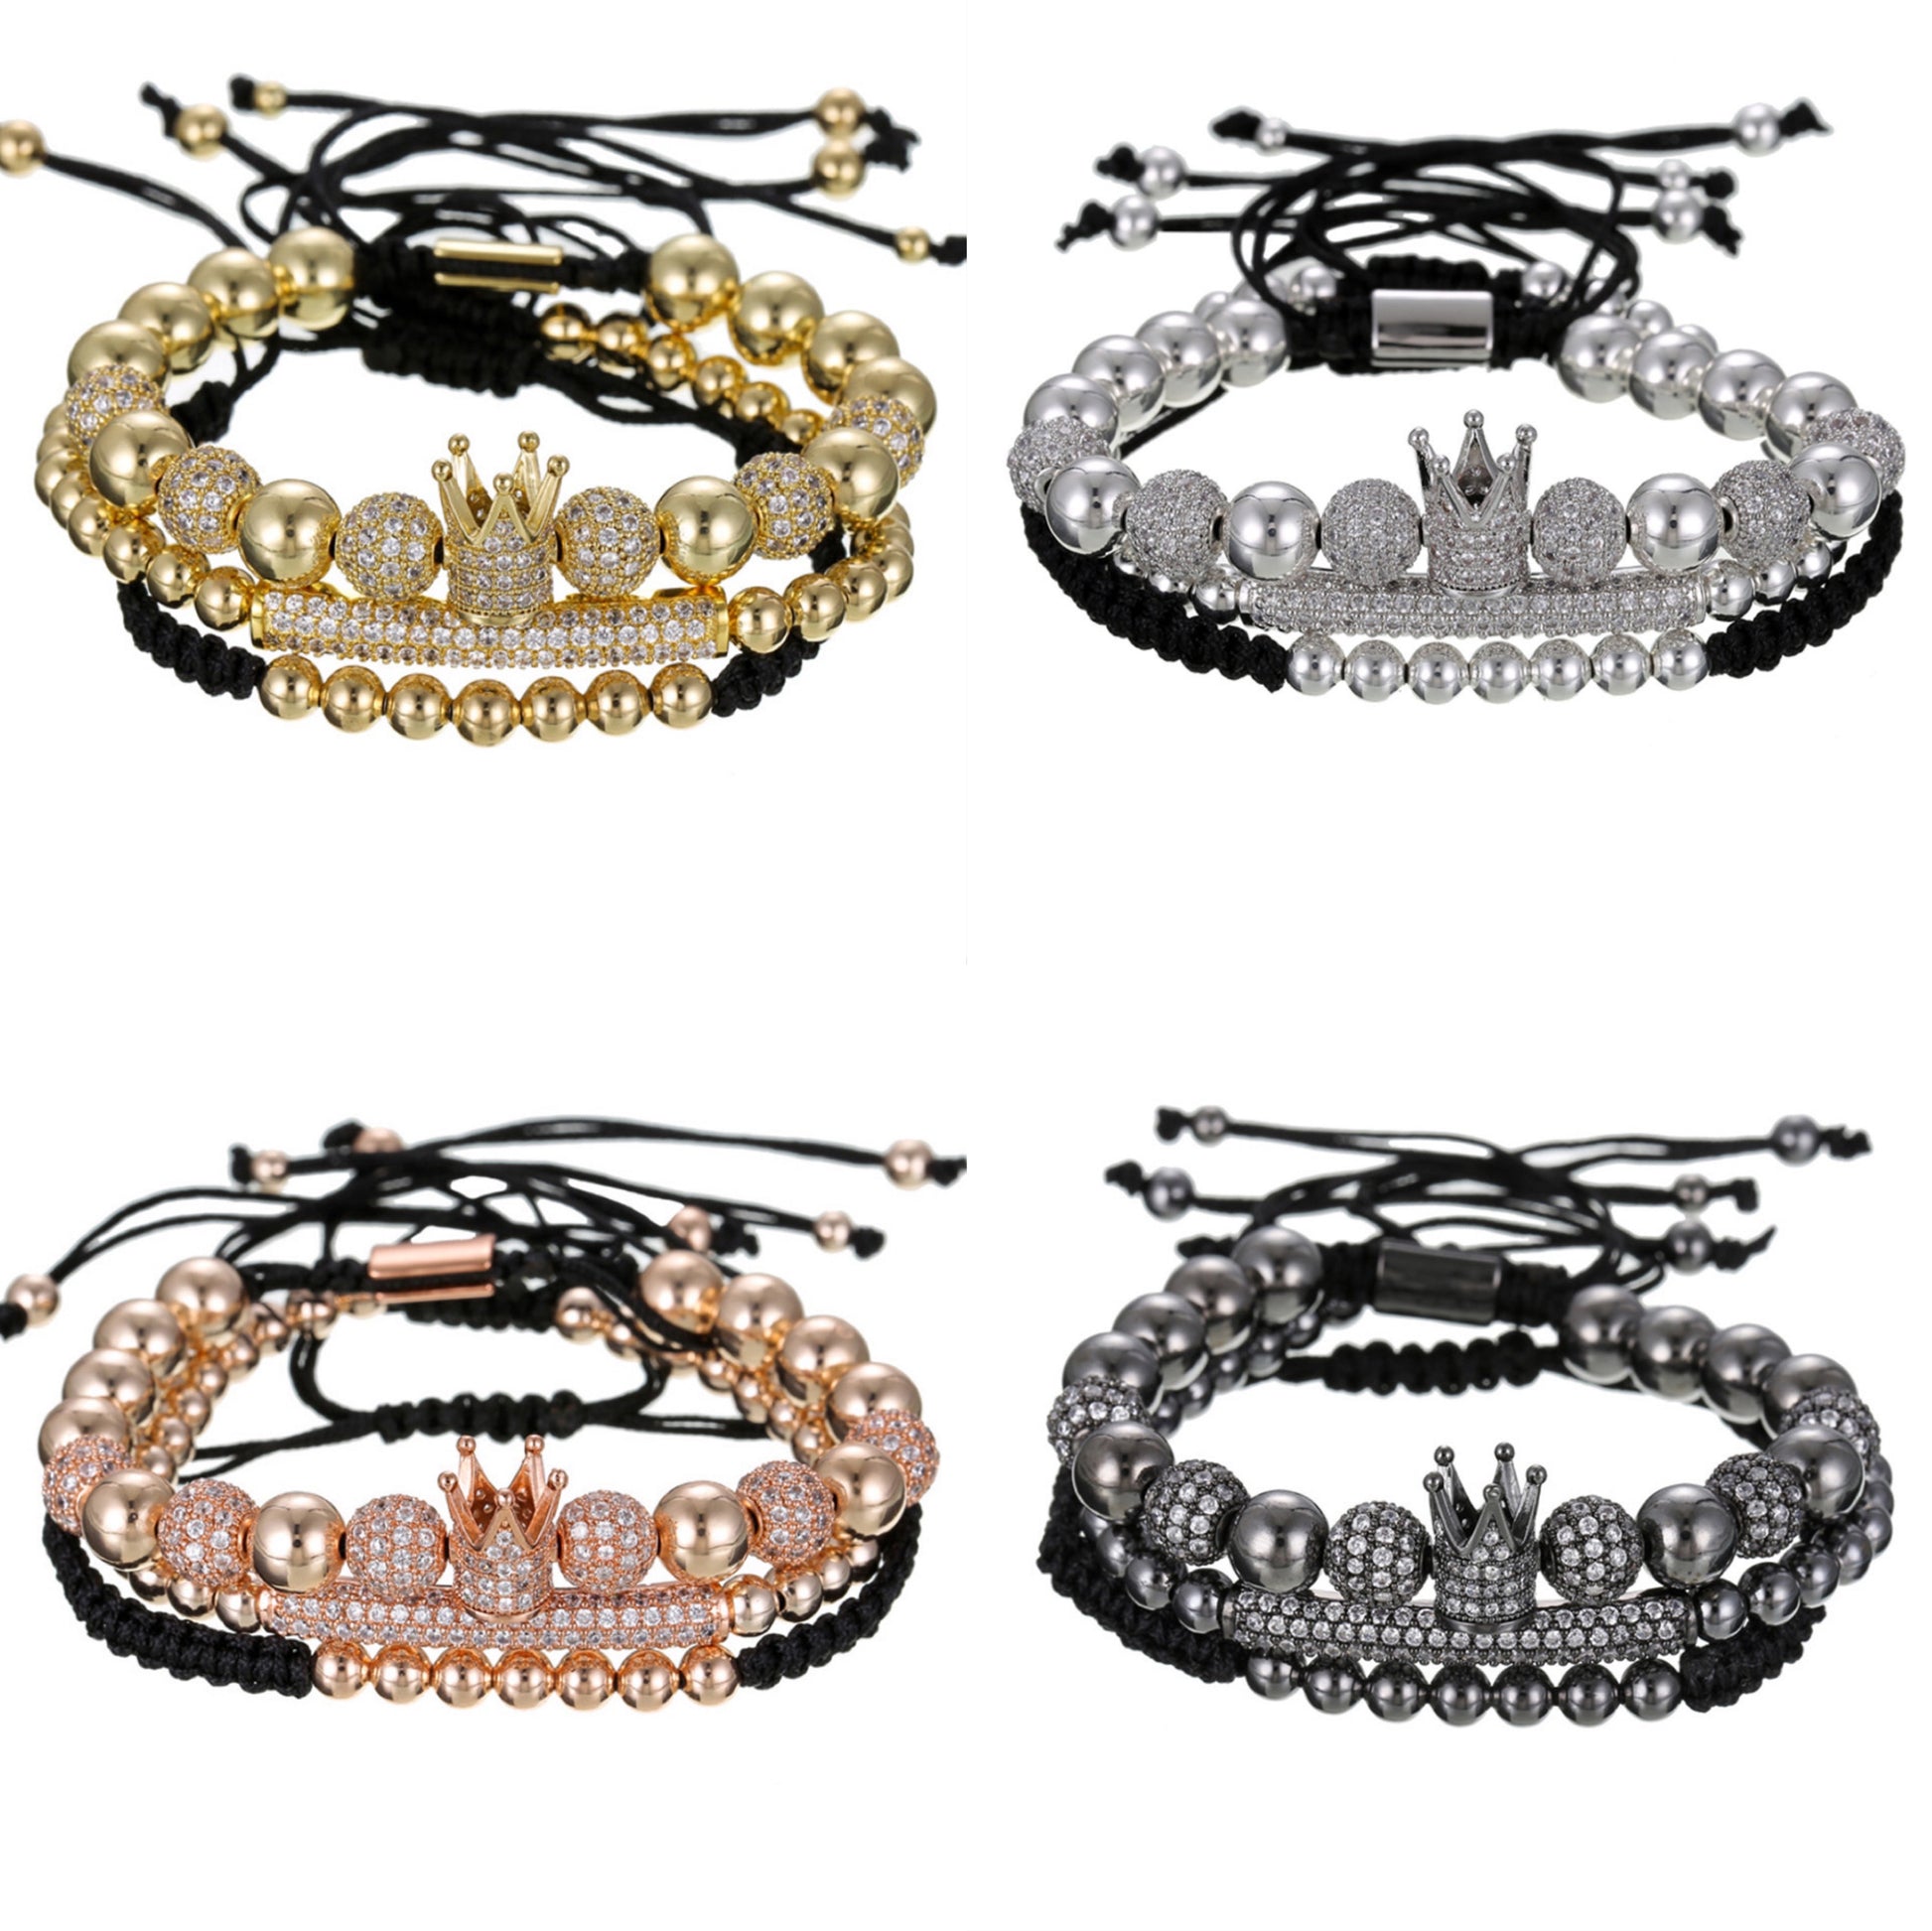 3pcs/set CZ Paved Beads Bracelets for Men Men Bracelets Charms Beads Beyond